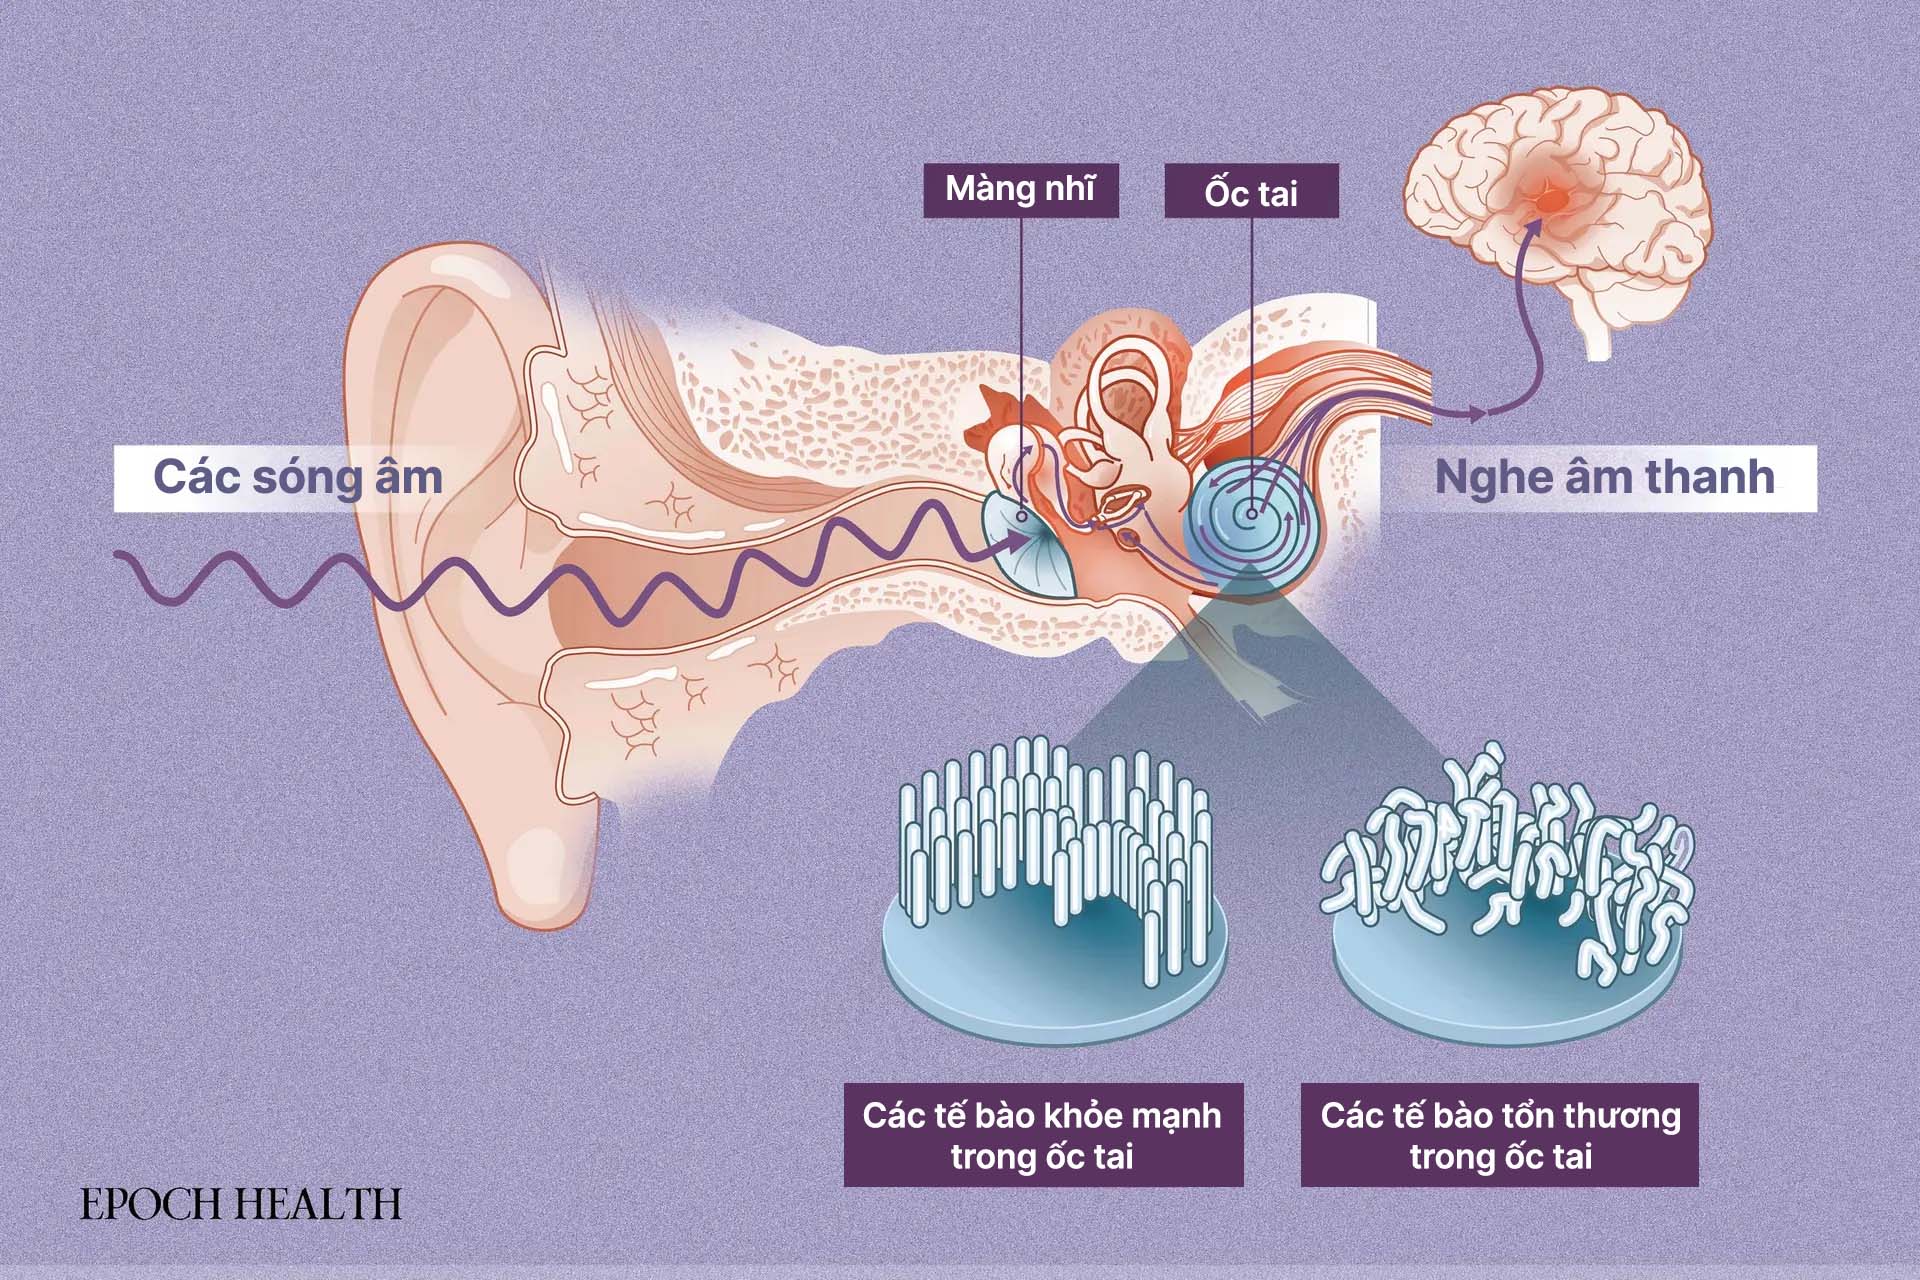 Ốc tai nằm phía sau màng nhĩ, biến sóng âm thanh thành tín hiệu điện để truyền đến não. (Ảnh: The Epoch Times, Shutterstock)